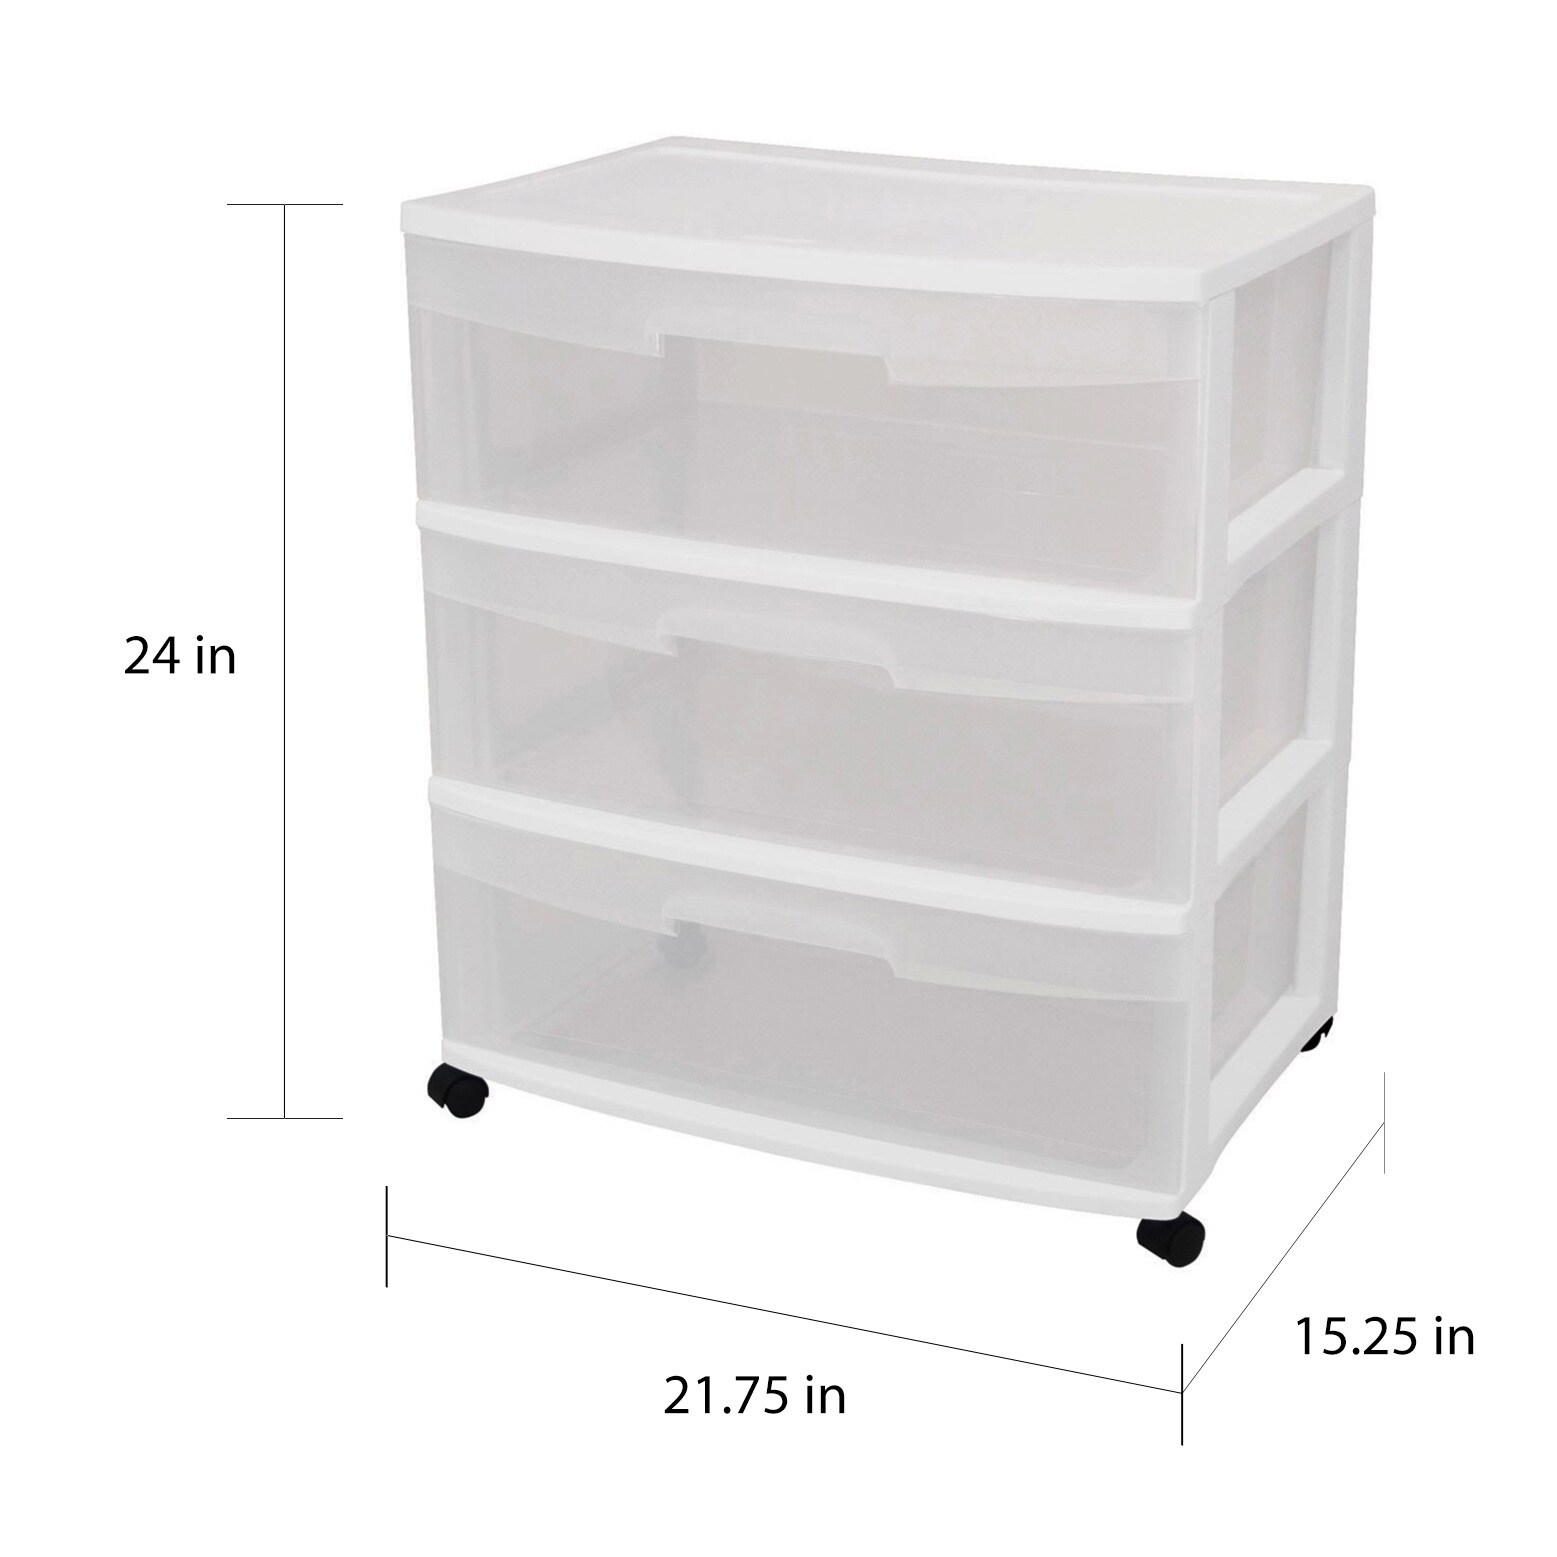 Shop Sterilite 29308001 3 Drawer White Wide Storage Drawer Cart